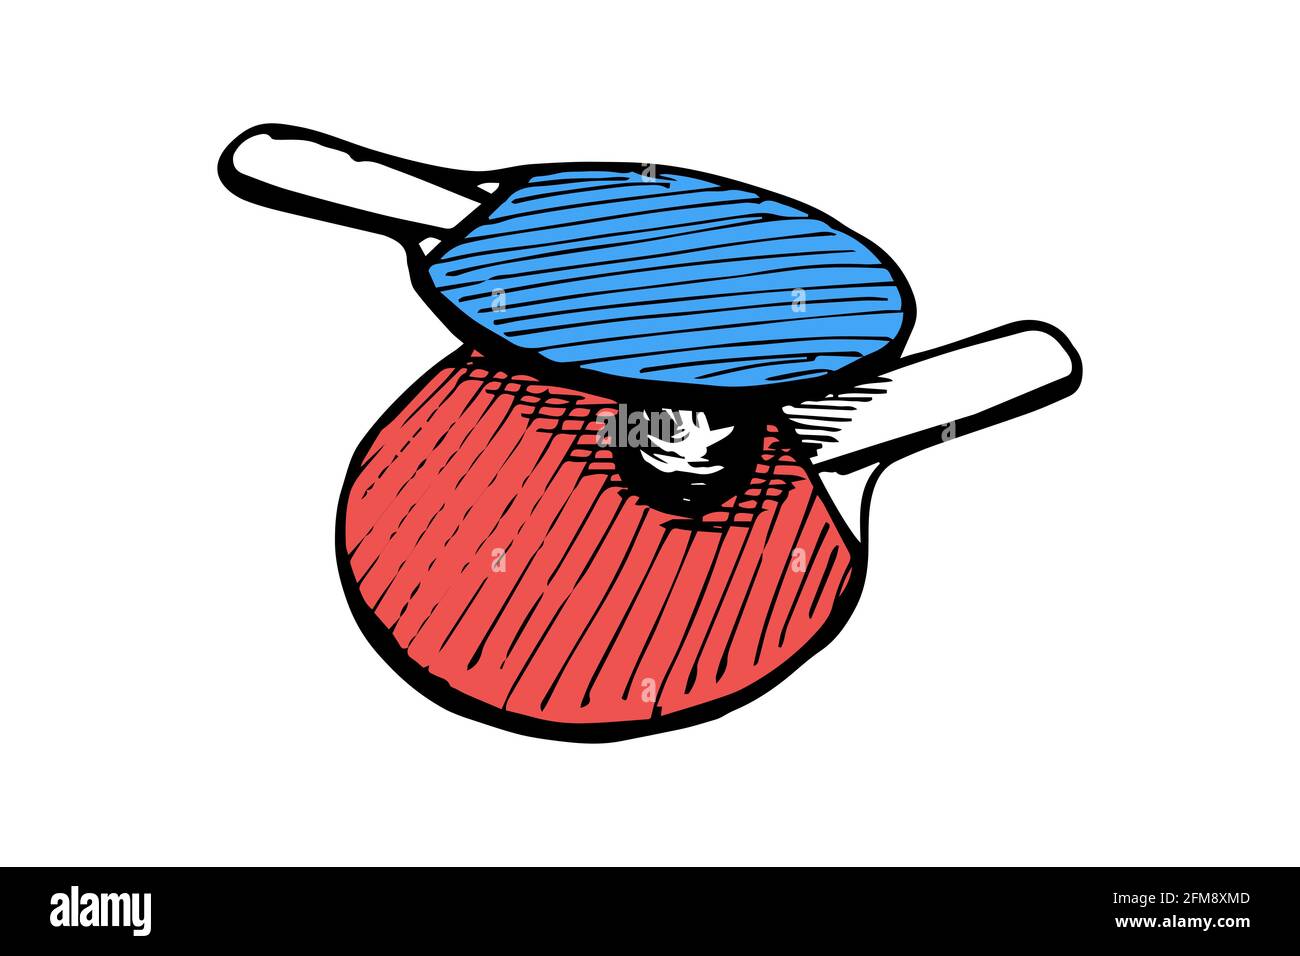 Dessin des contours de raquettes bleu et rouge de ping-pong et de balle dessiné à la main.Équipement de tennis de table.Concept du logo des pagaies de jeu de ping-pong.Illustration isolée à l'encre noire vectorielle sur fond blanc Illustration de Vecteur